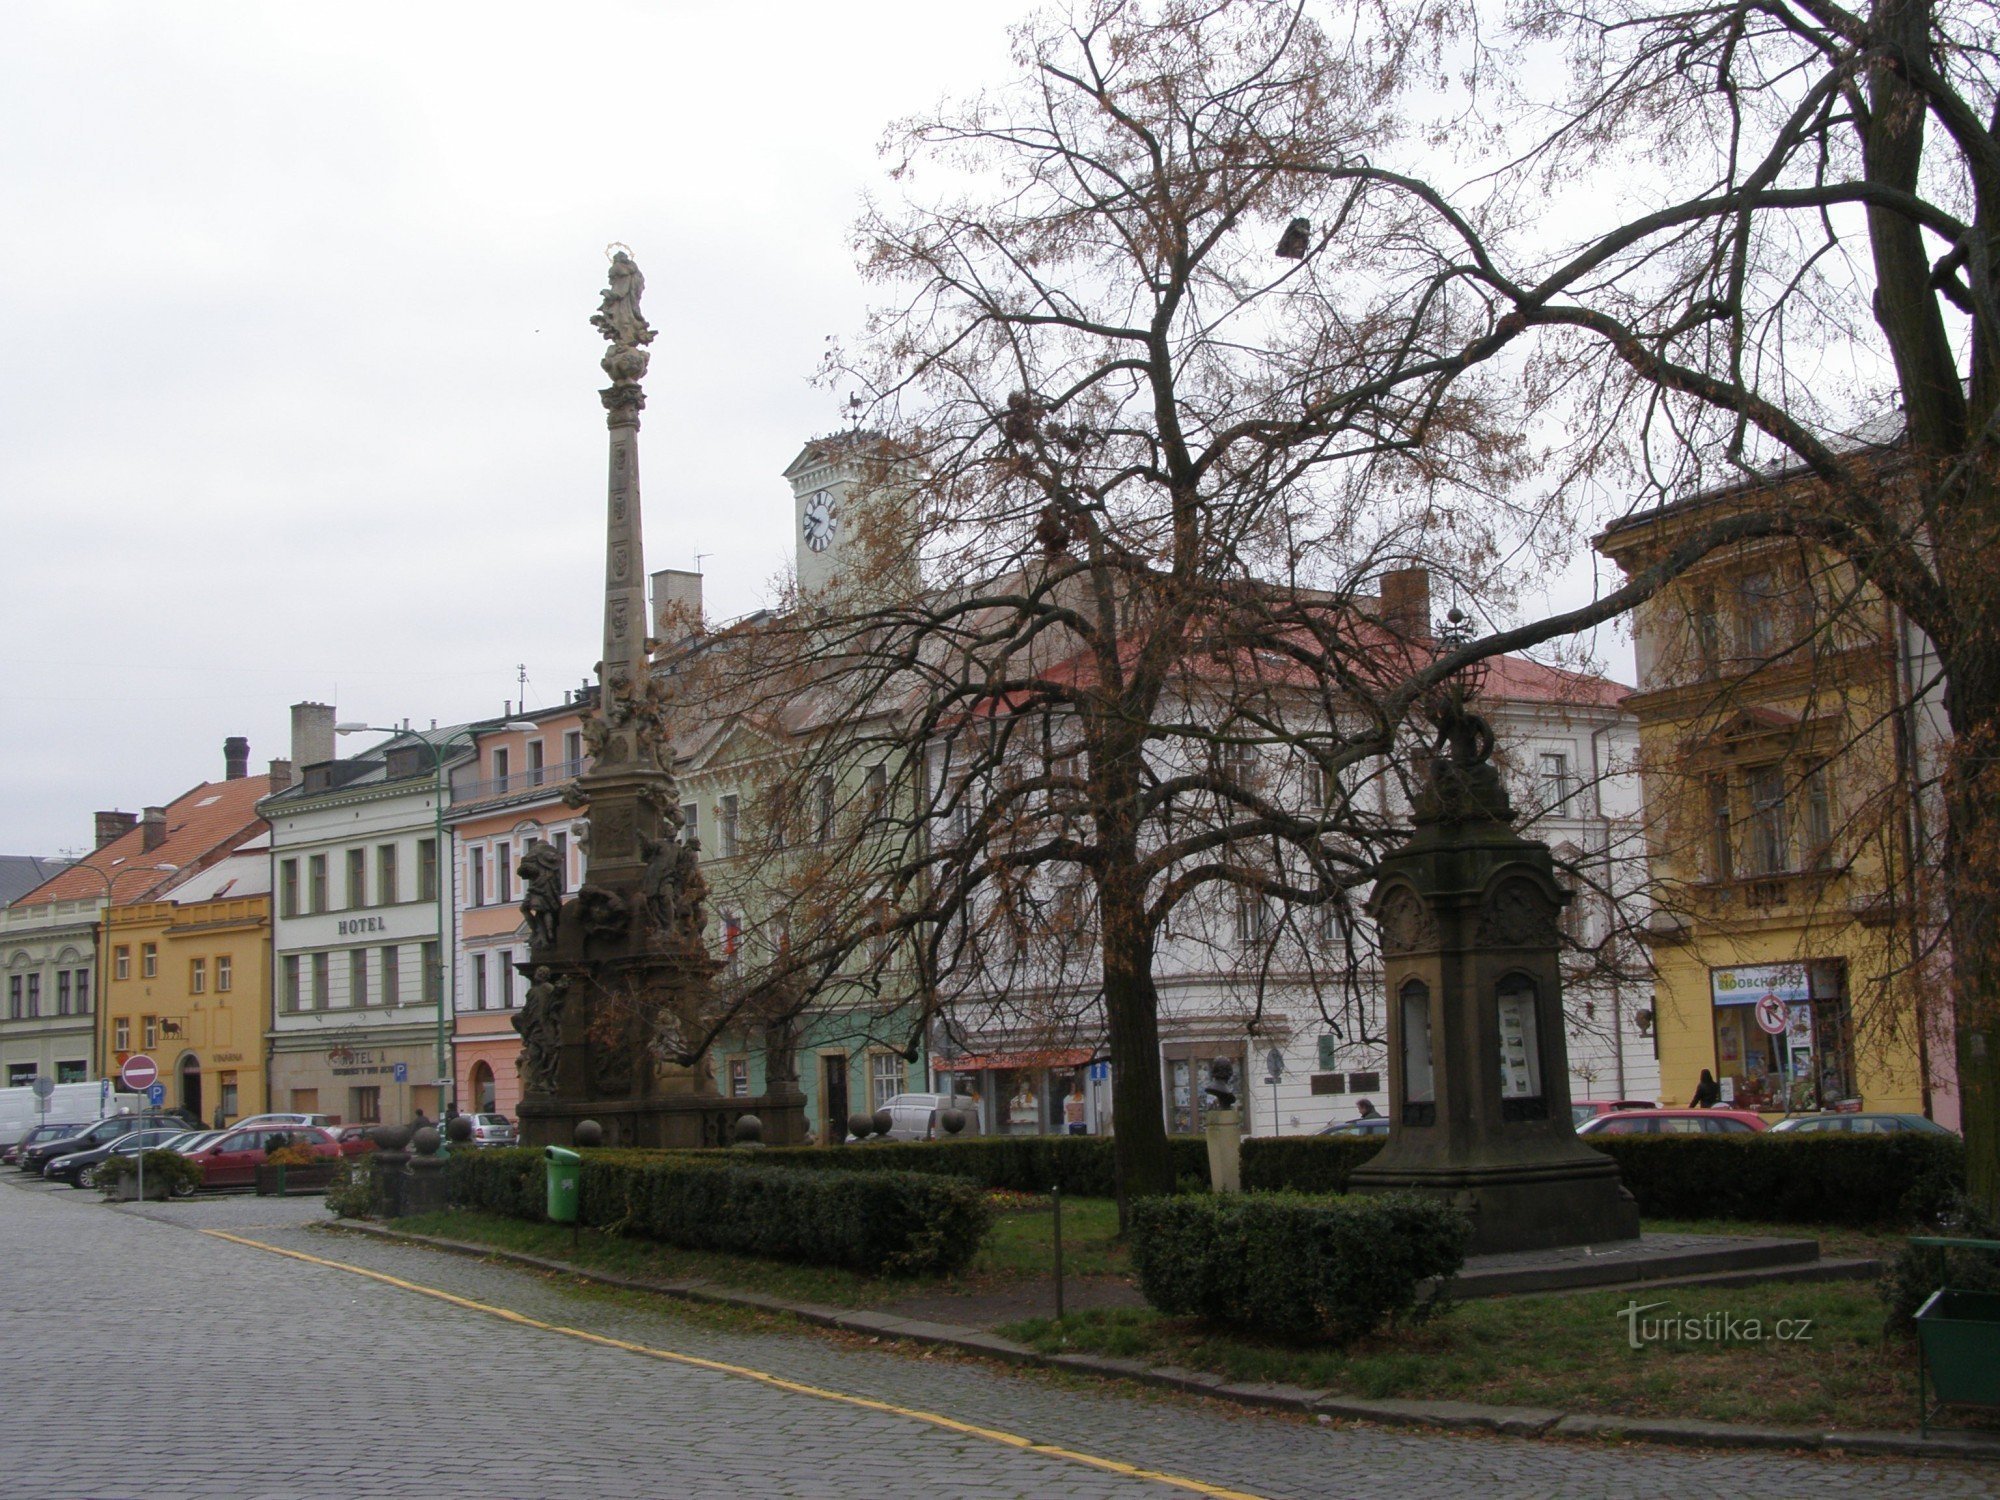 Jaroměř - Czech Army Square